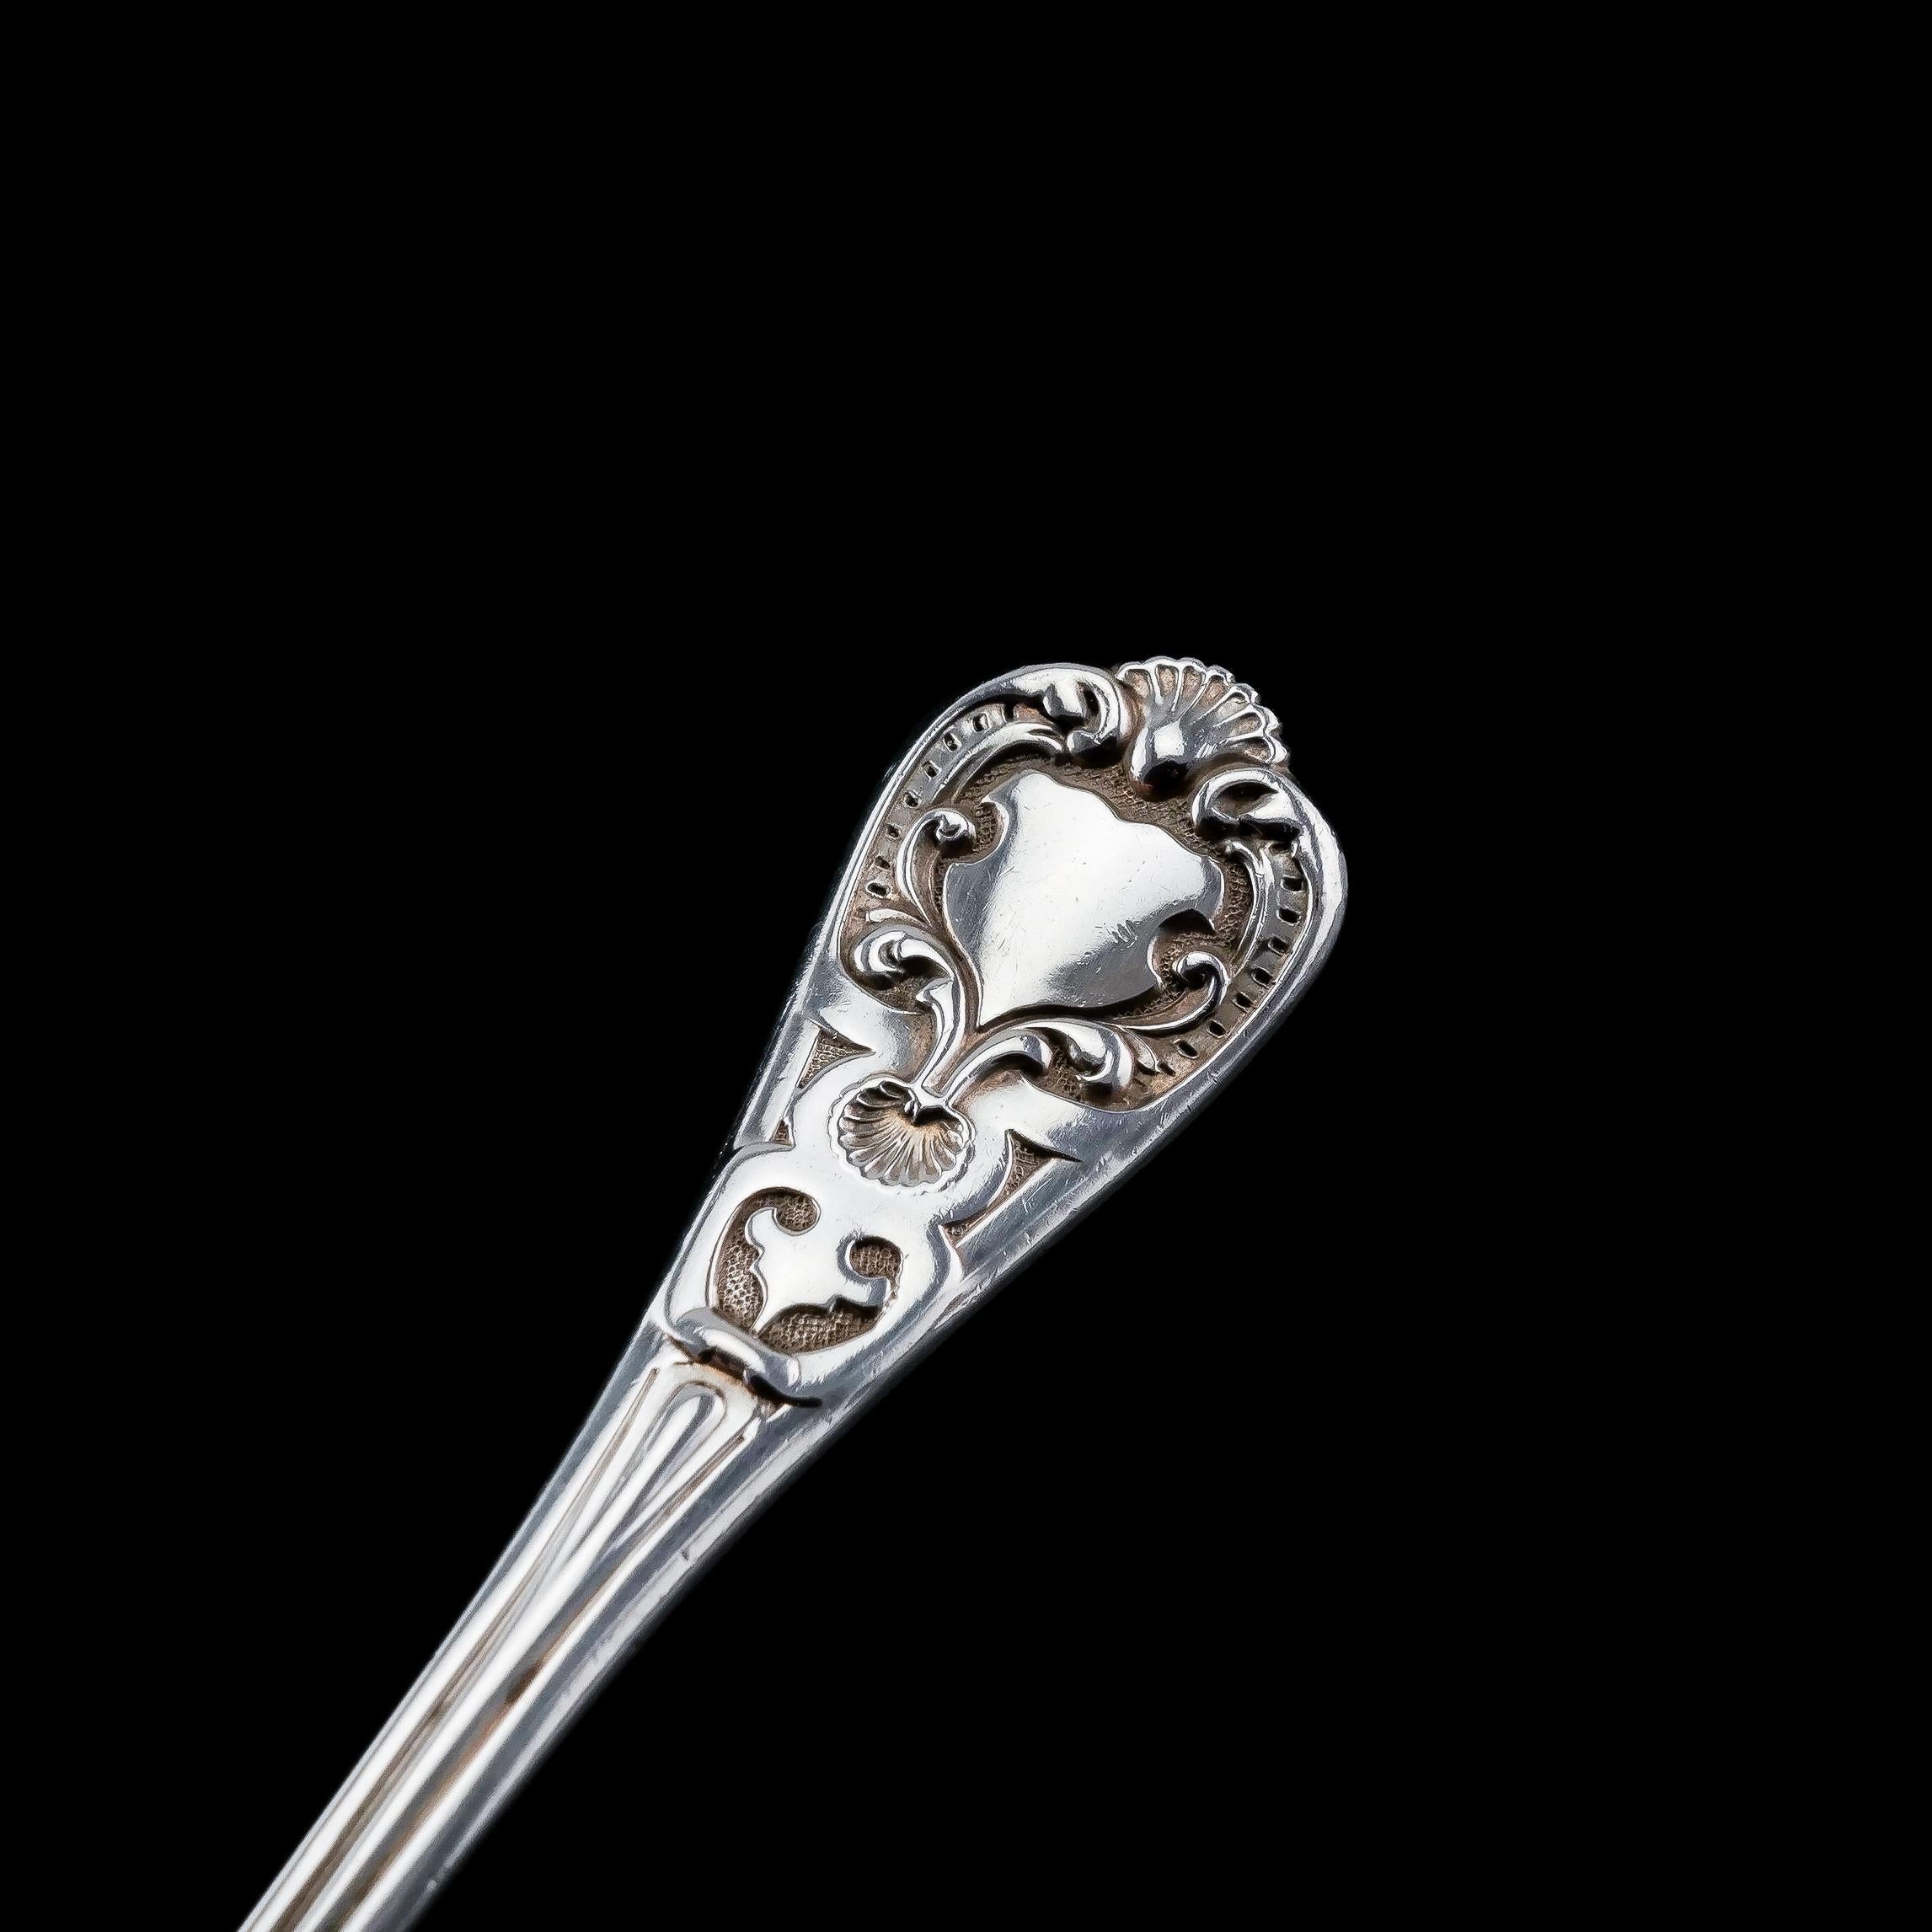 Antique Solid Silver Sugar Sifter Spoon, Francis Higgins, 1856 1